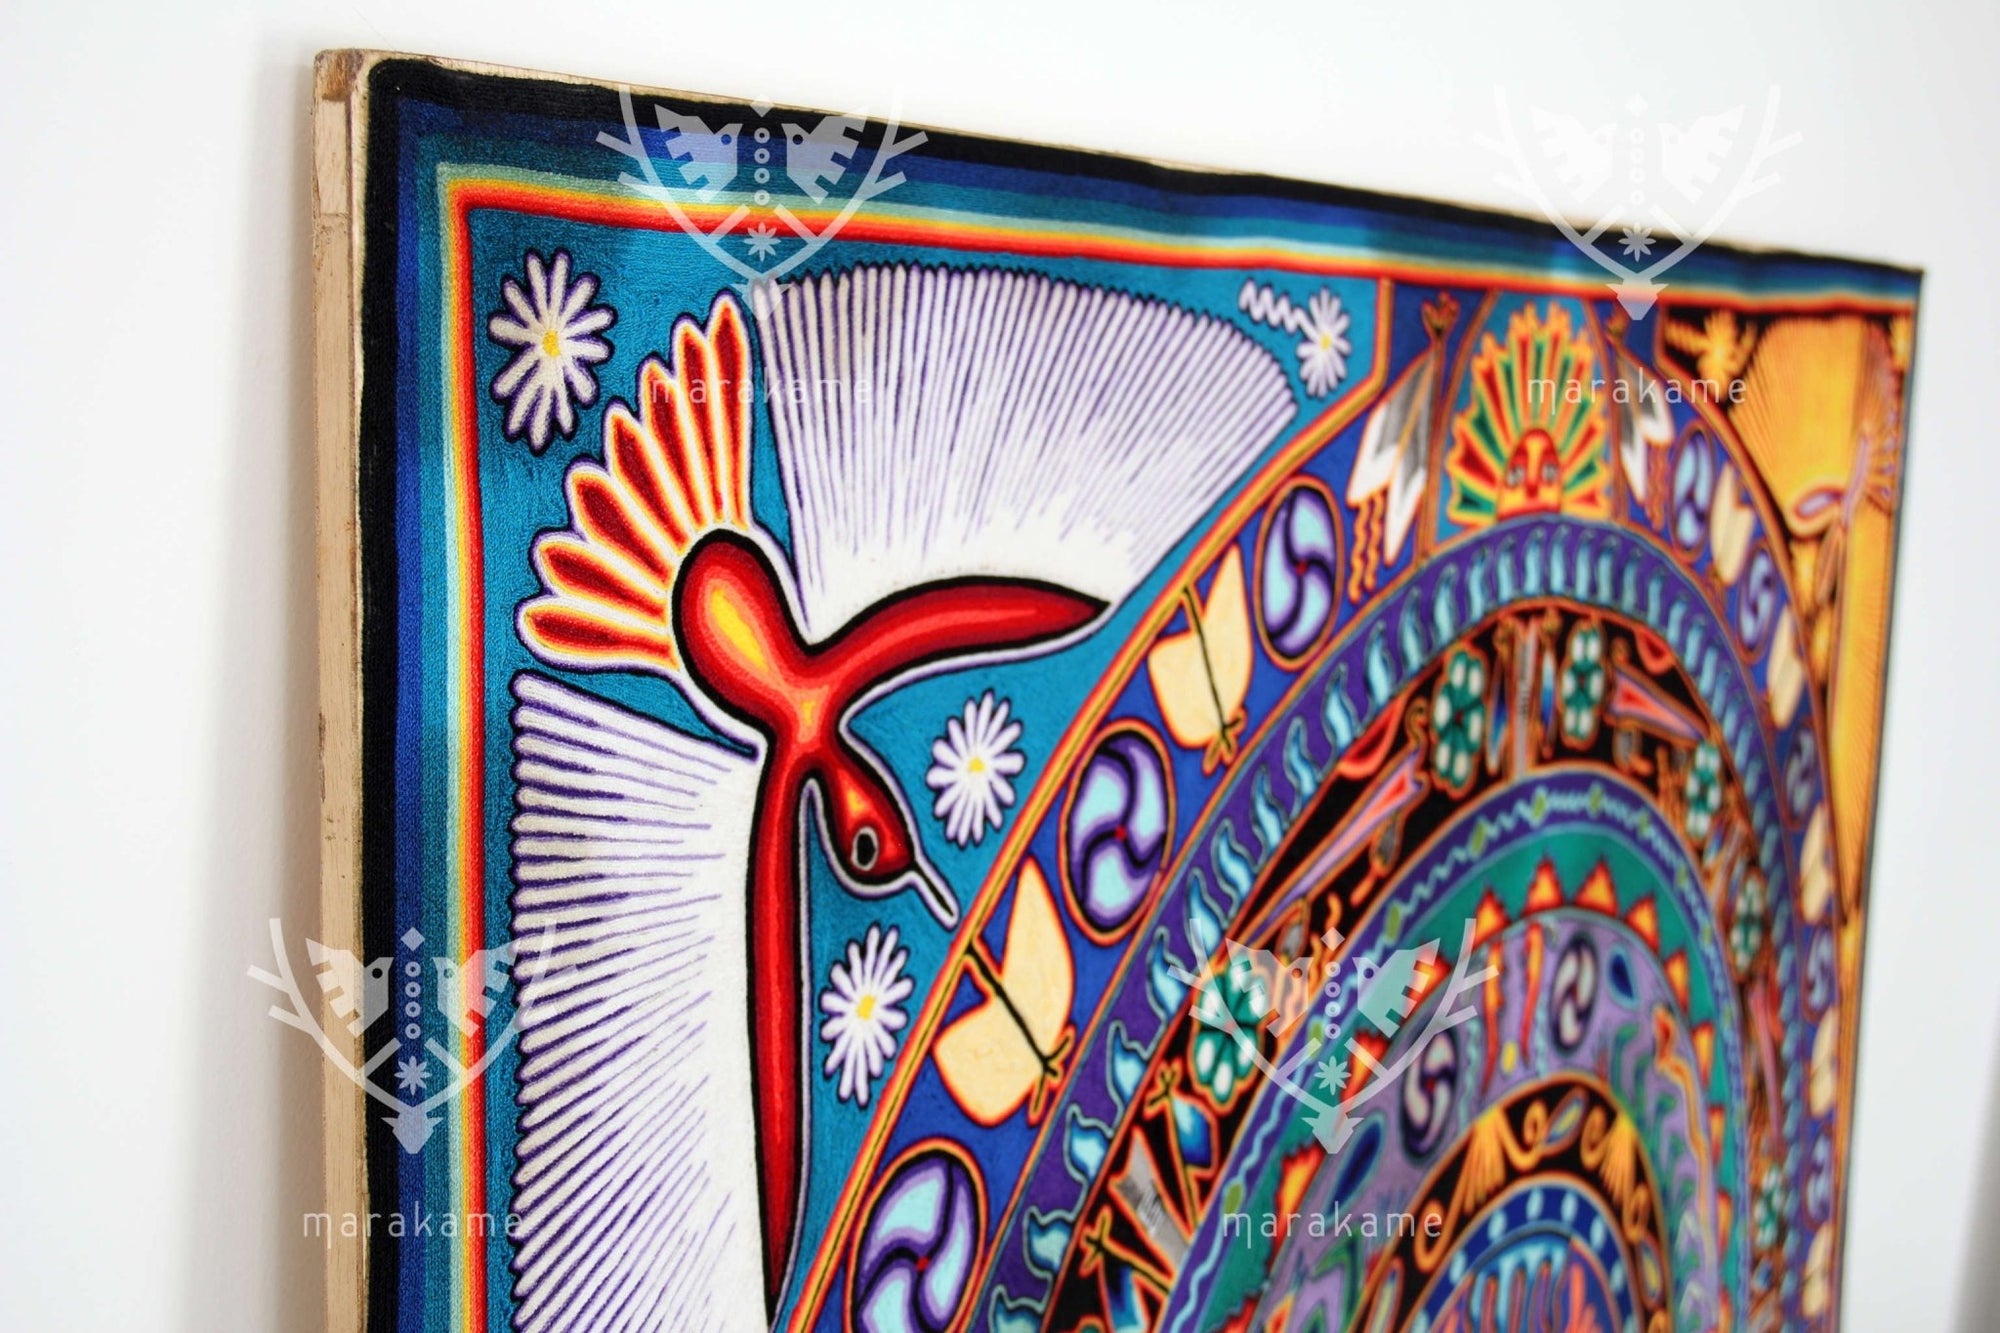 Nierika de Estambre Cuadro Huichol - Kieri - 150 x 150 cm. - Arte Huichol - Marakame